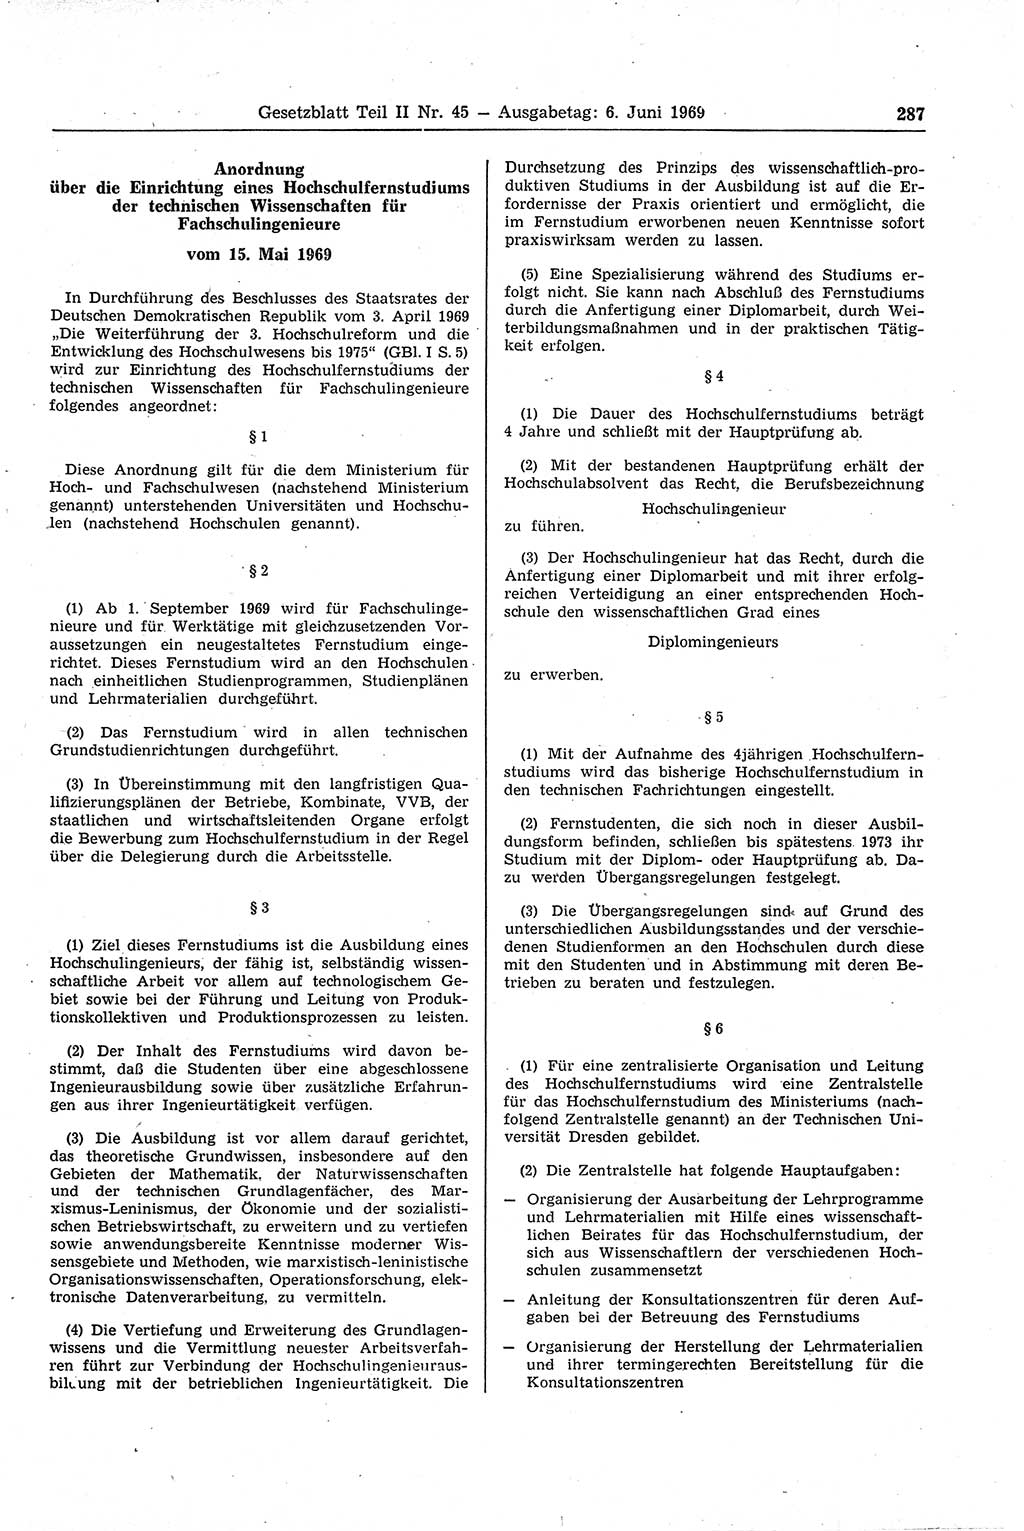 Gesetzblatt (GBl.) der Deutschen Demokratischen Republik (DDR) Teil ⅠⅠ 1969, Seite 287 (GBl. DDR ⅠⅠ 1969, S. 287)